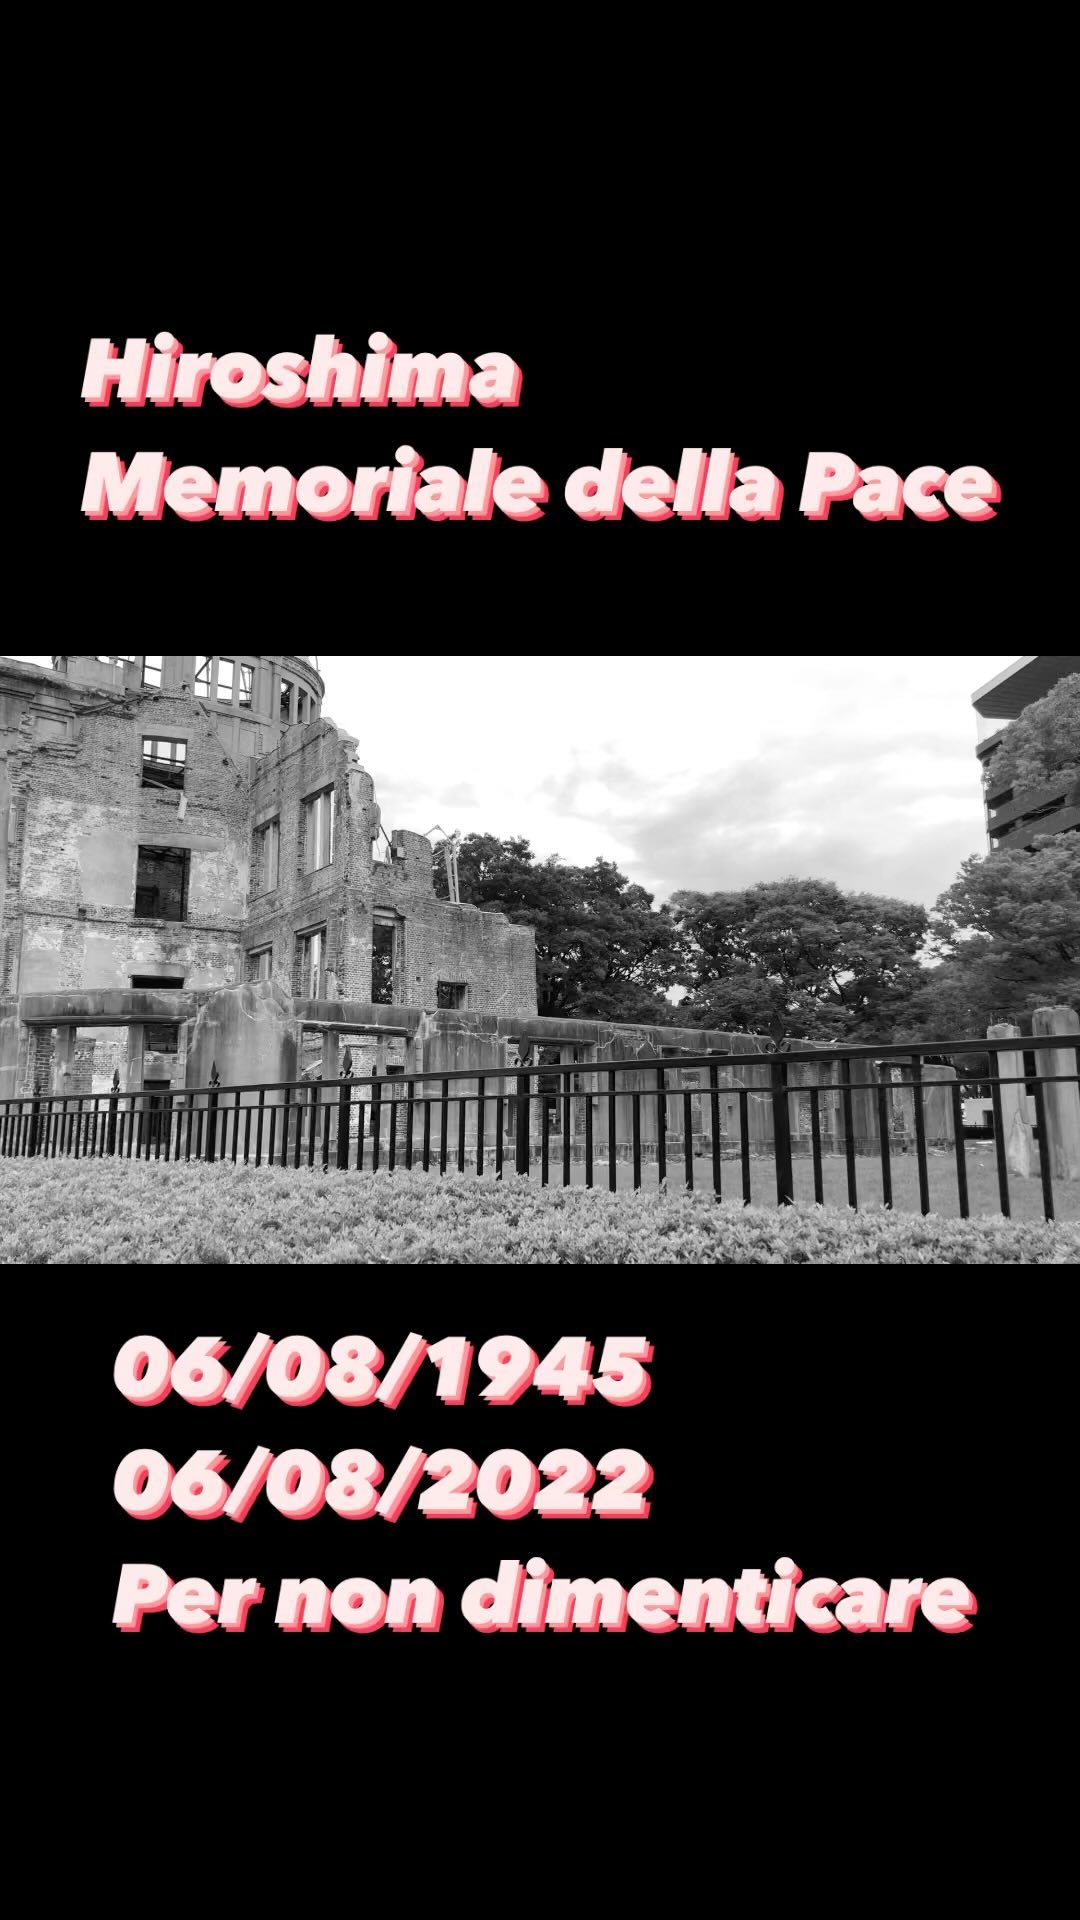 Hiroshima - Giappone 6 Agosto del 1945, alle 8:15 del mattino il mondo scopri la bomba atomica..
Oggi sono 77 anni da quell’infausto giorno dove morirono più di 150.000 persone la maggior parte civili.. per non dimenticare la follia della guerra..
#hiroshima #giornodellamemoria #bombaatomica #memorialedellapacedihiroshima #giappone #jntoitalia #japan #iriseperiplotravel #reelsvideo #reelsinstagram #reels